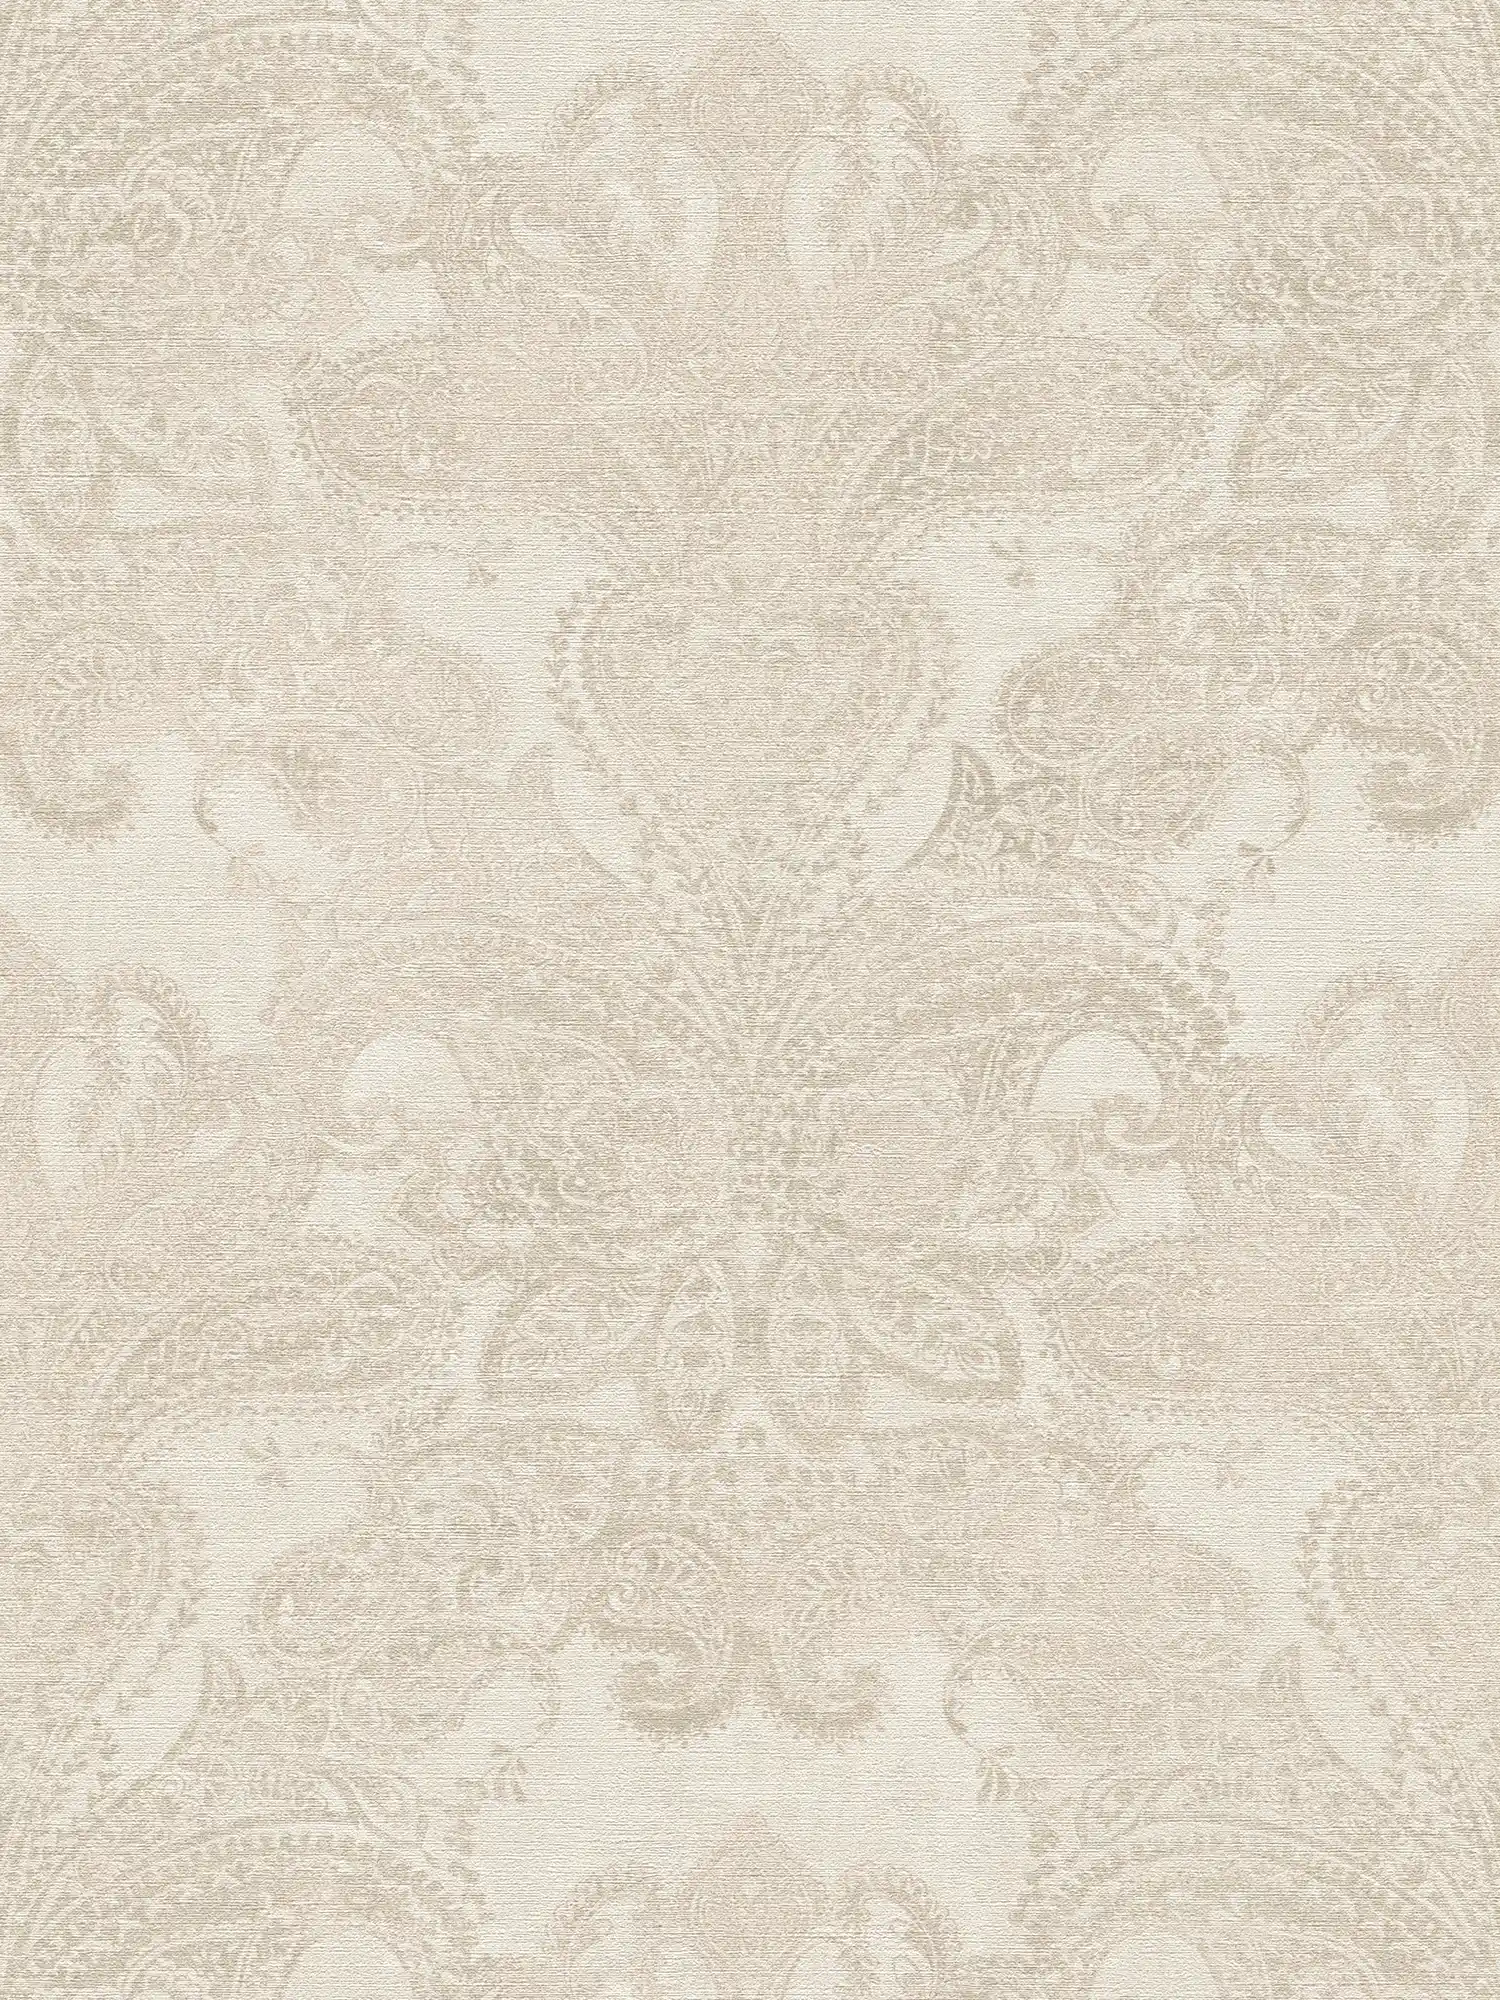 Barocktapete mit großflächigen Ornamenten – Weiß, Creme, Grau
